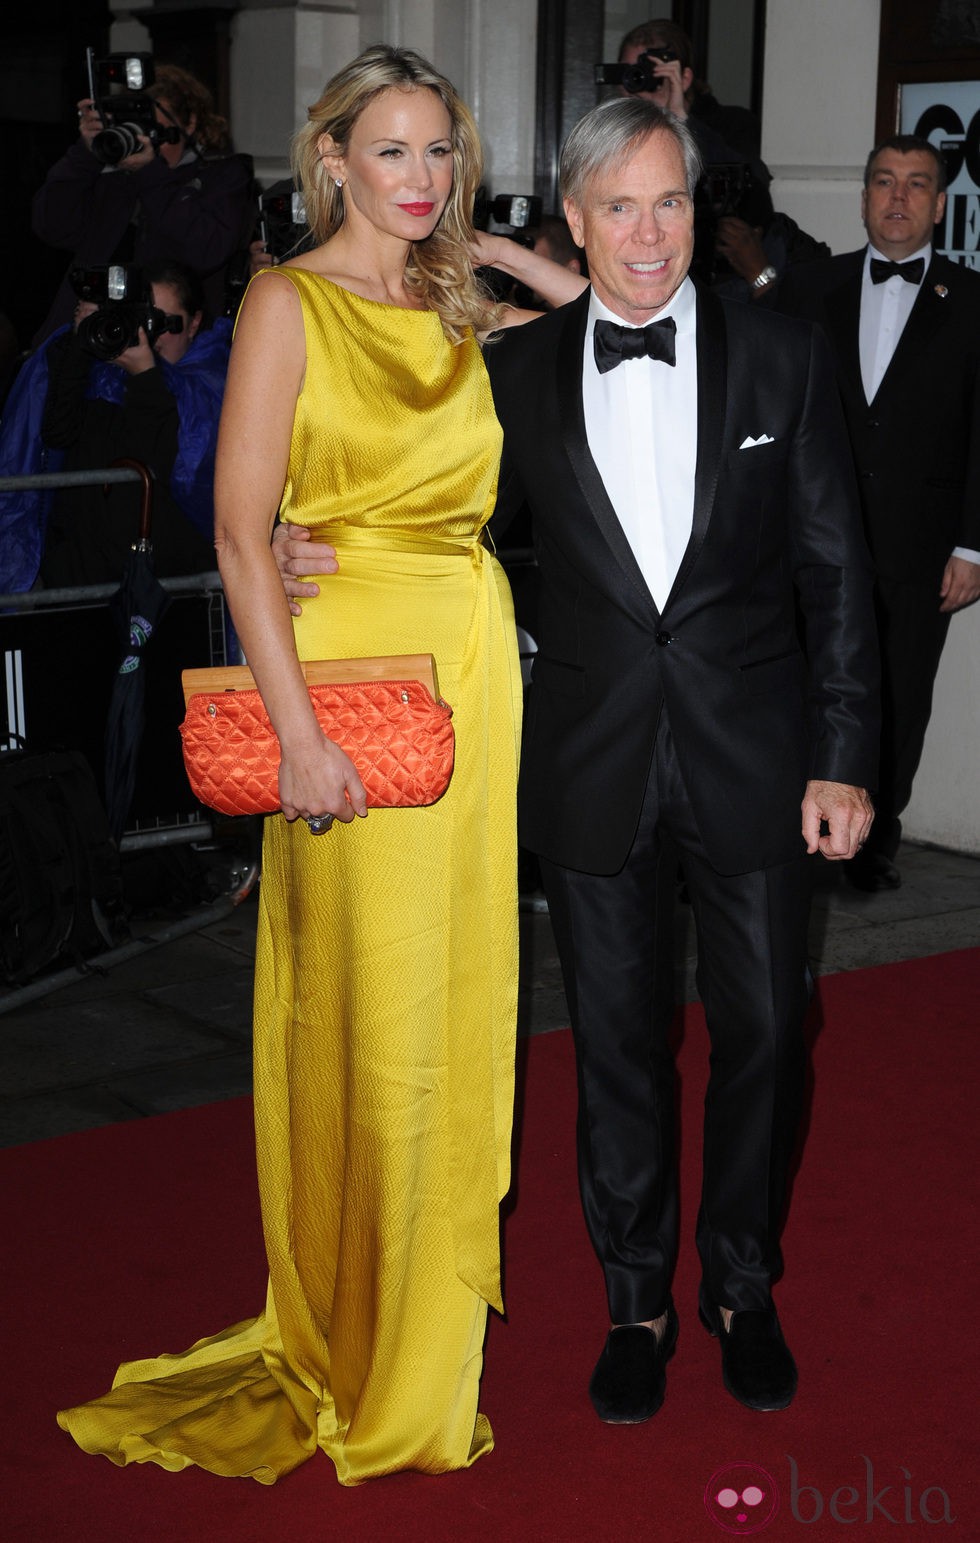 Tommy Hilfiger y su mujer en los Premios GQ 'Hombres del Año' 2011